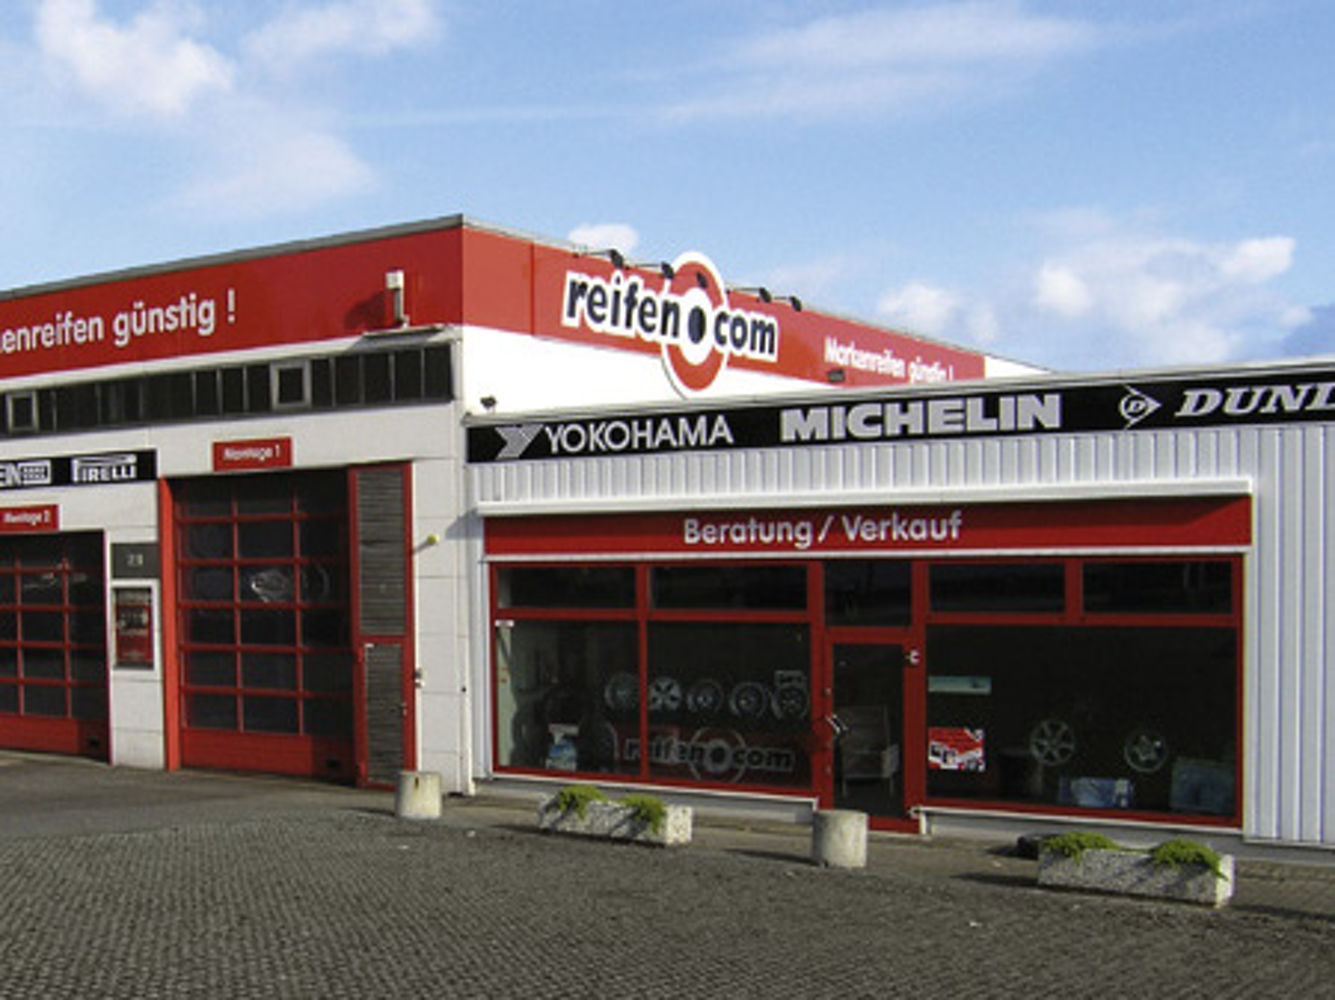 reifen.com-branch in Dortmund